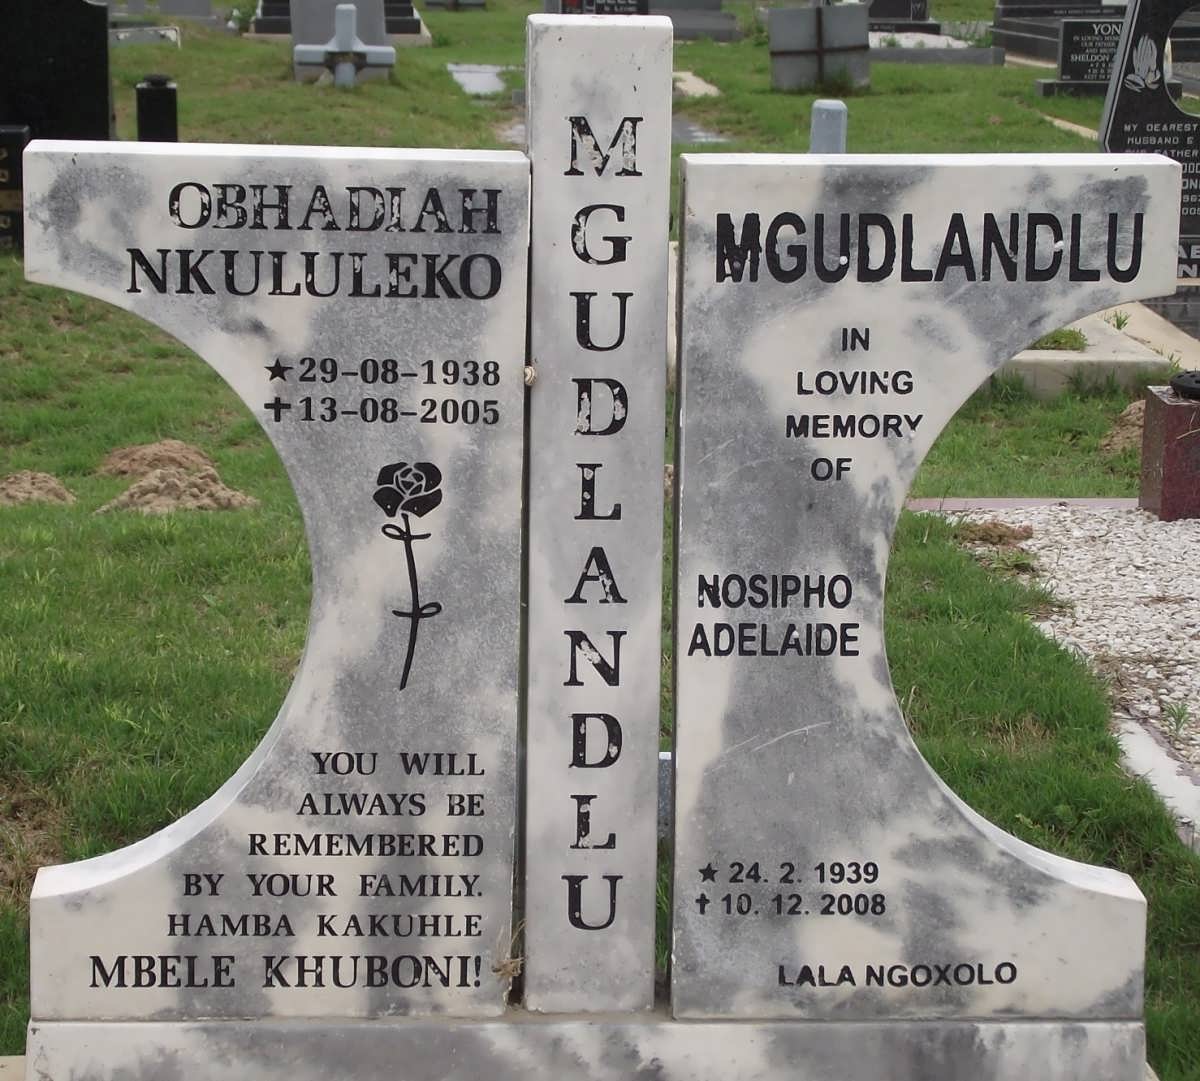 MGUDLANDLU Obhadiah Nkululeko 1938-2005 & Nosipho Adelaide 1939-2008